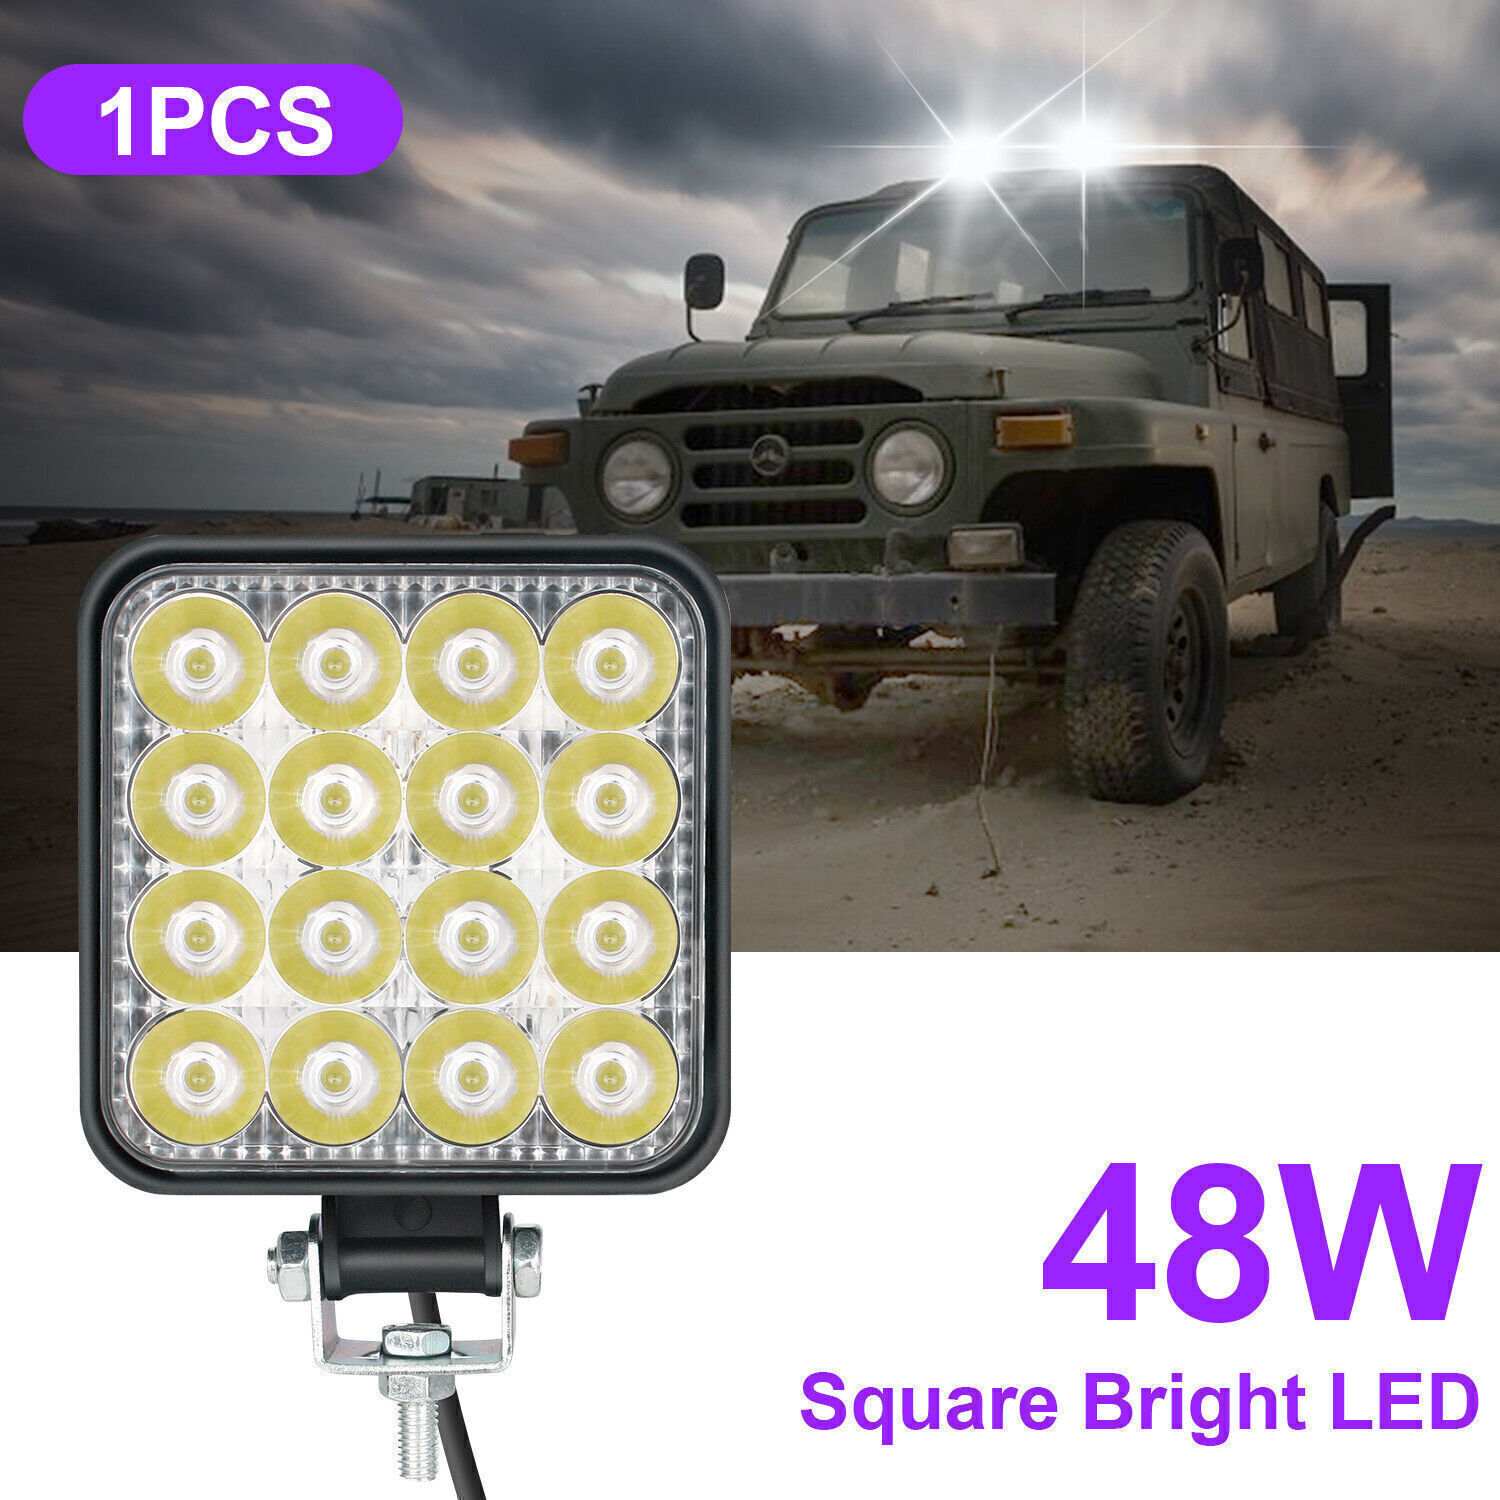 1-20pcs 48W LED Work Light Truck OffRoad Tractor Flood Lights 12V 24V Square